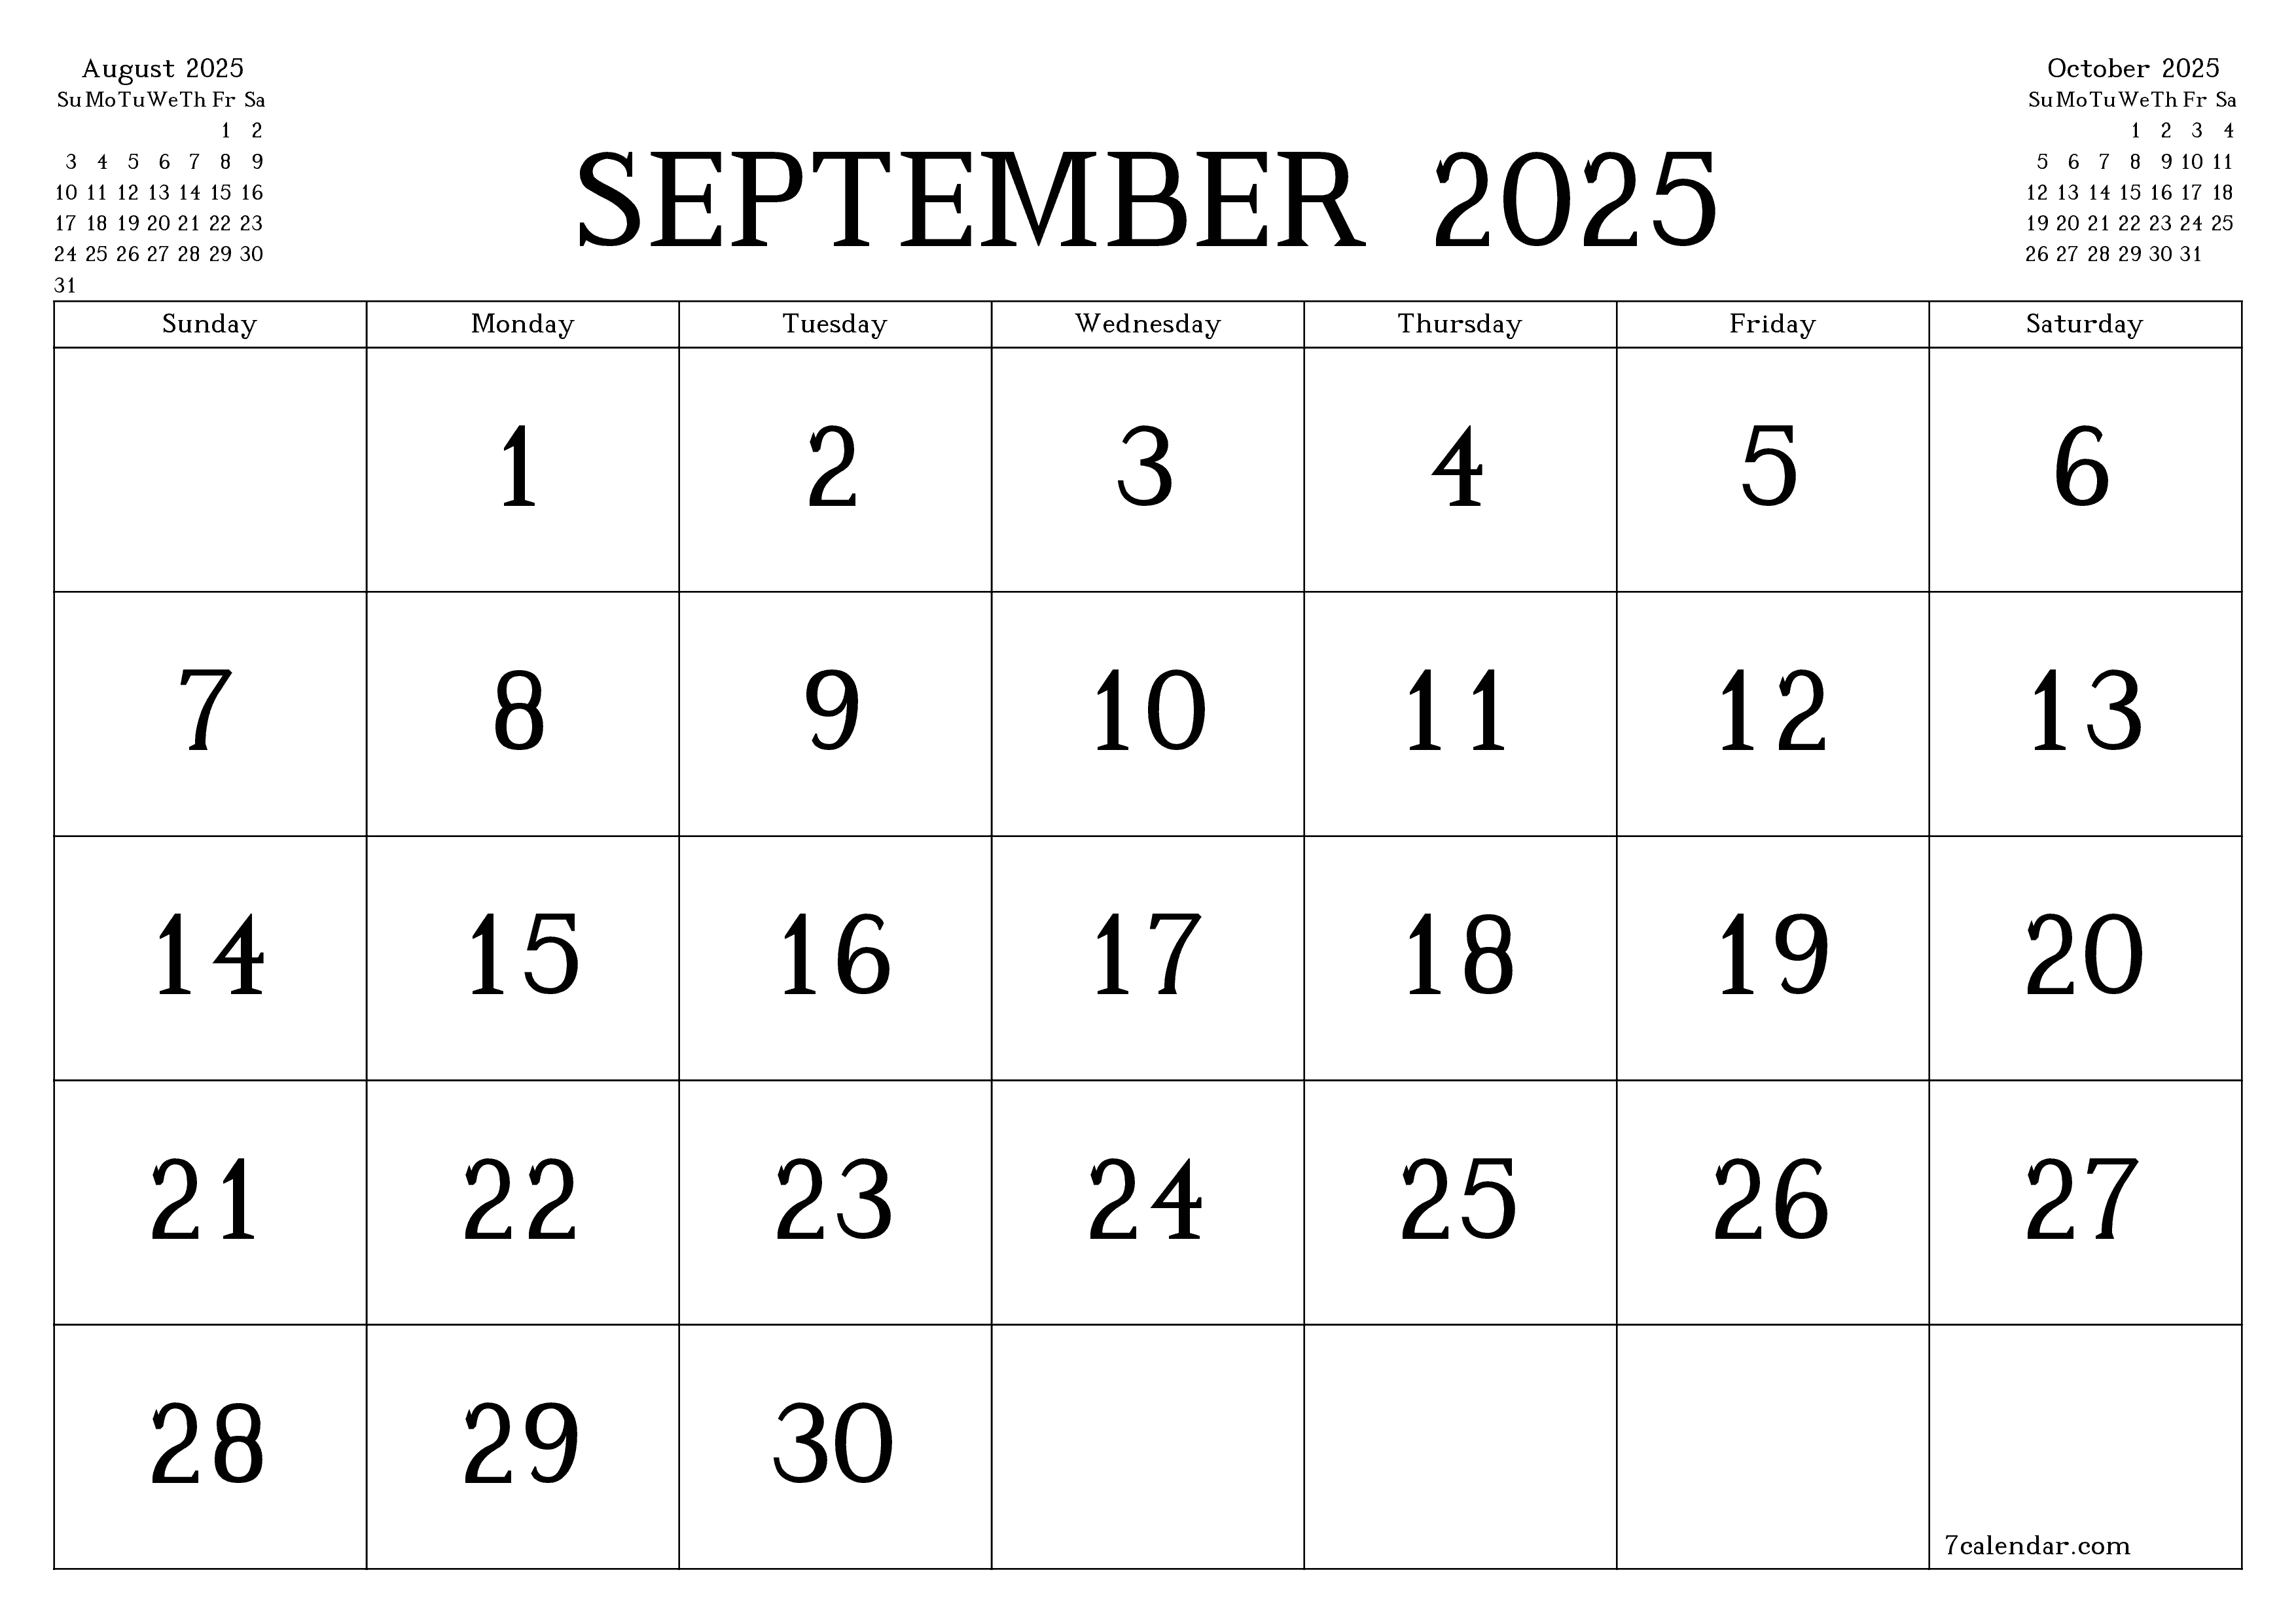 Blank calendar September 2025